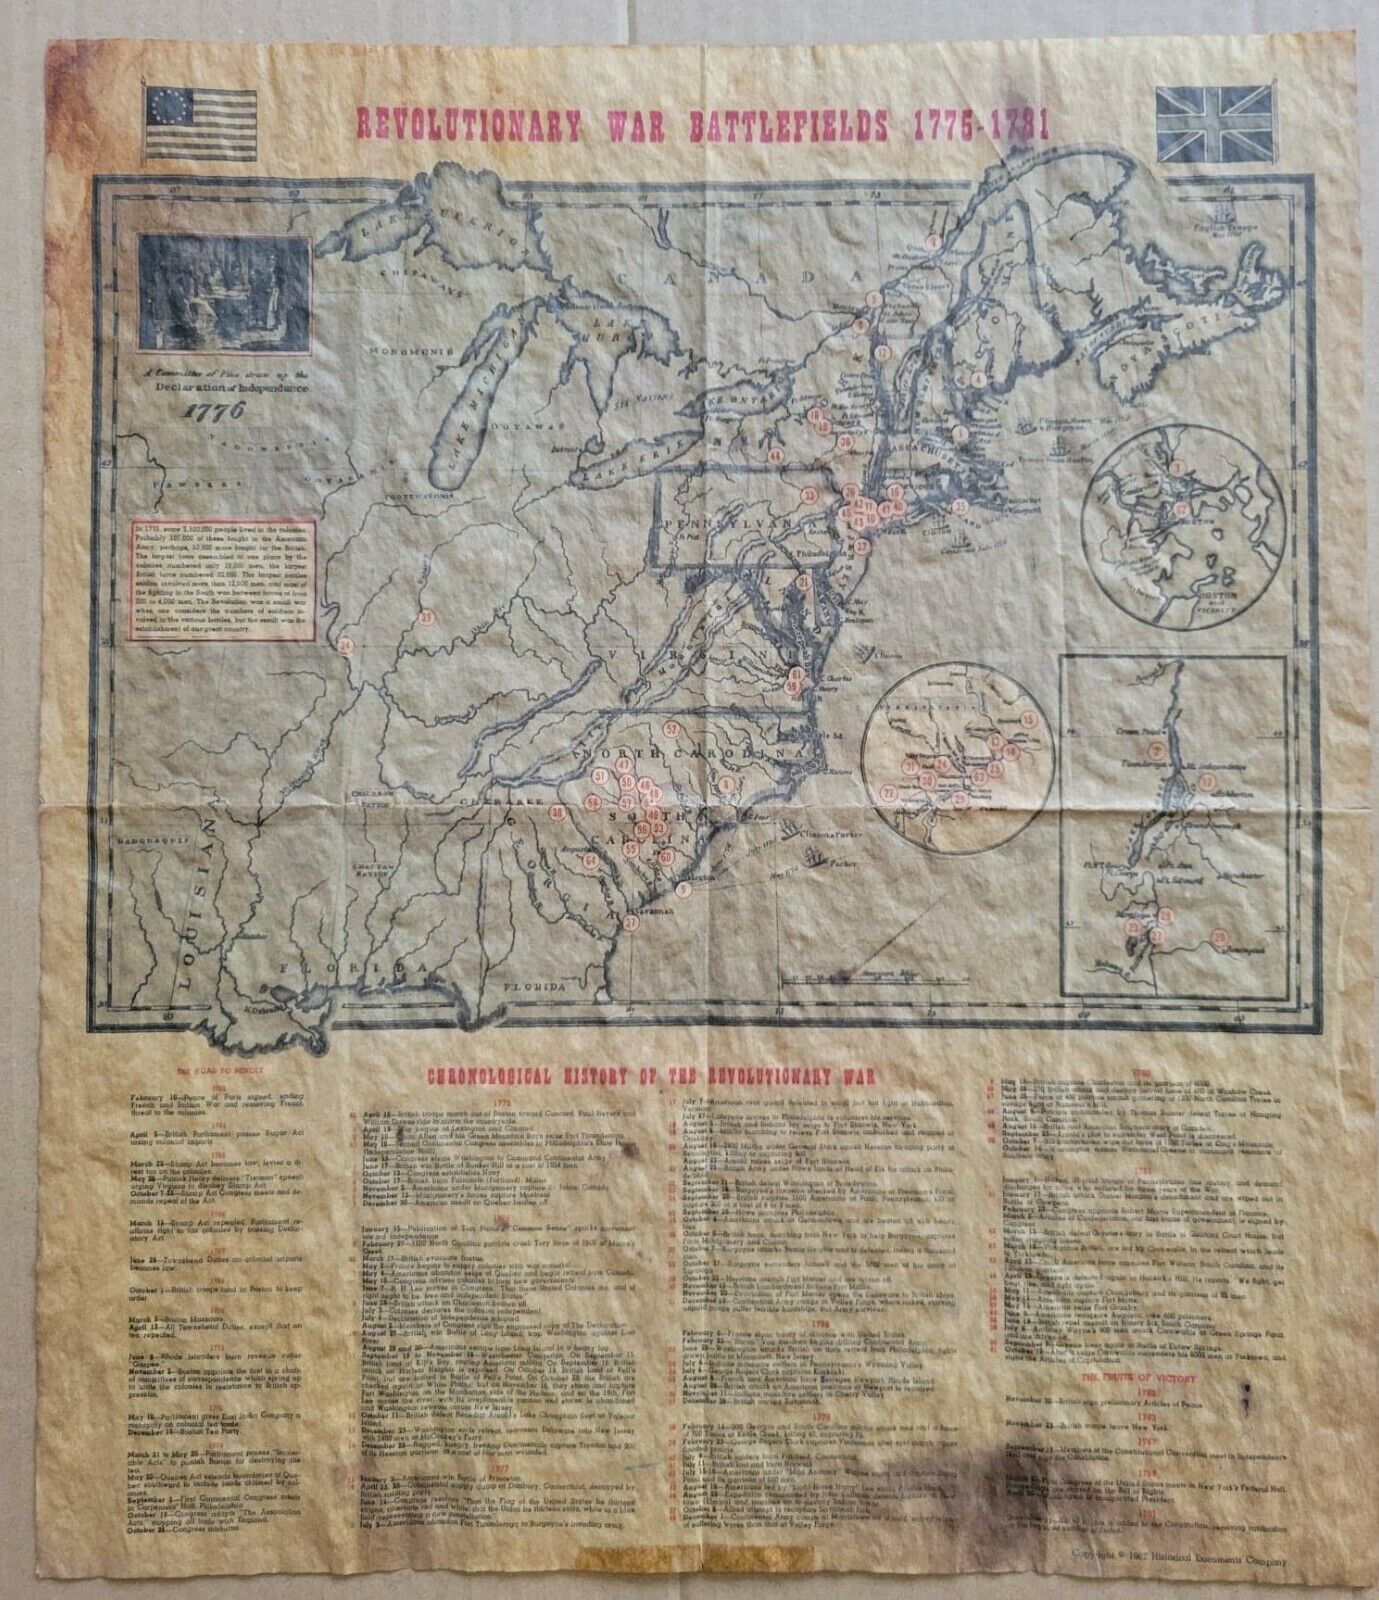 Vintage Revolutionary War Battlefield Map 1775-1781